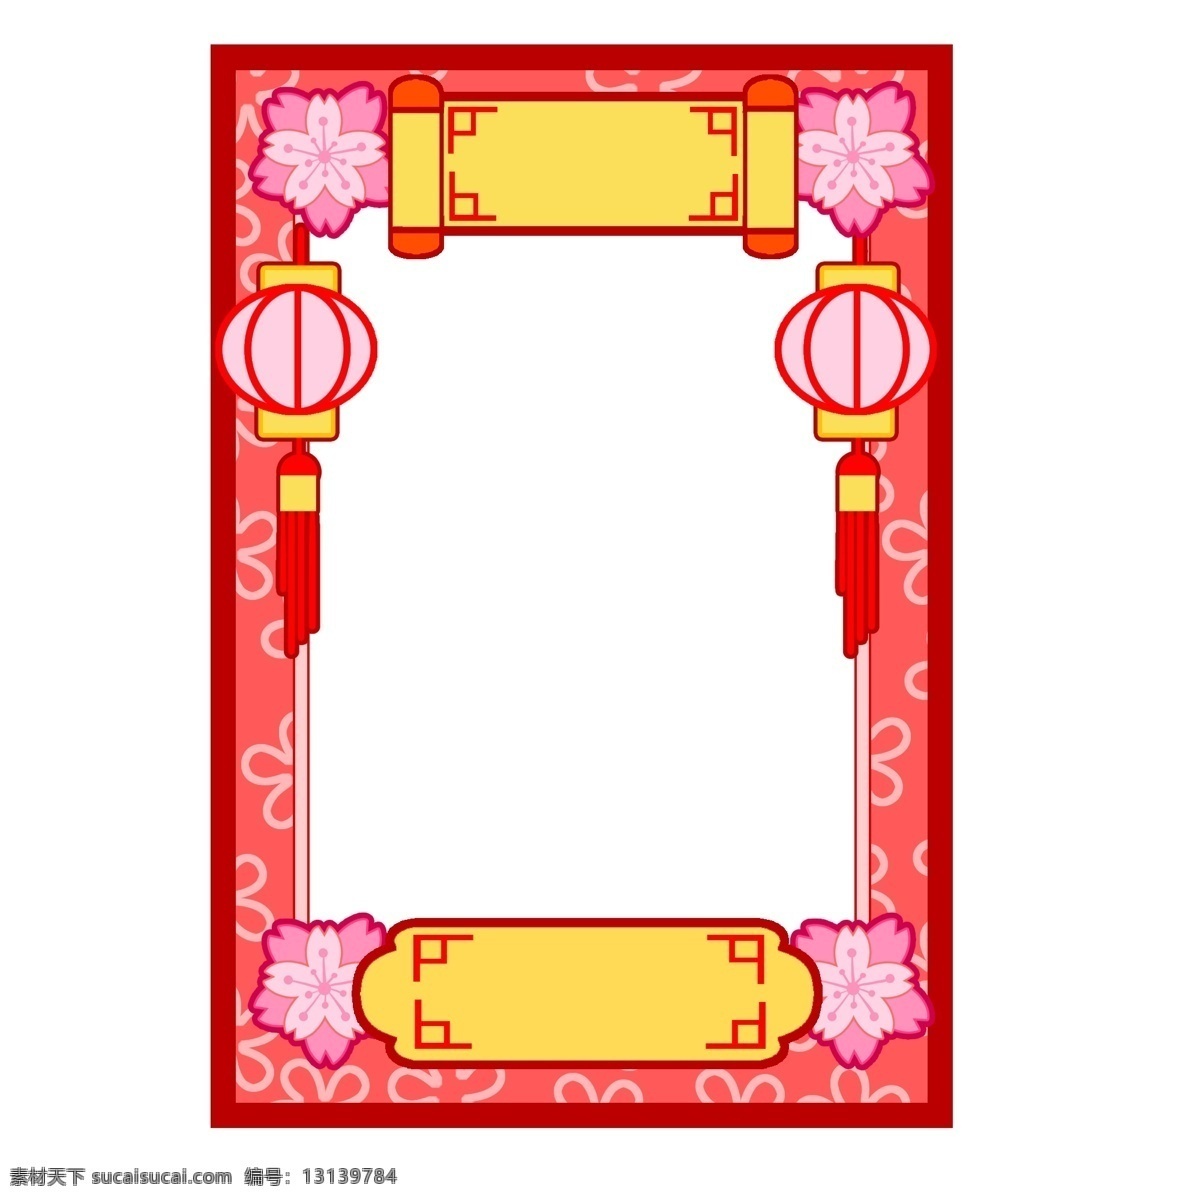 新年 可爱 边框 插画 漂亮 灯笼 红色 小花 手绘灯笼边框 卡通灯笼边框